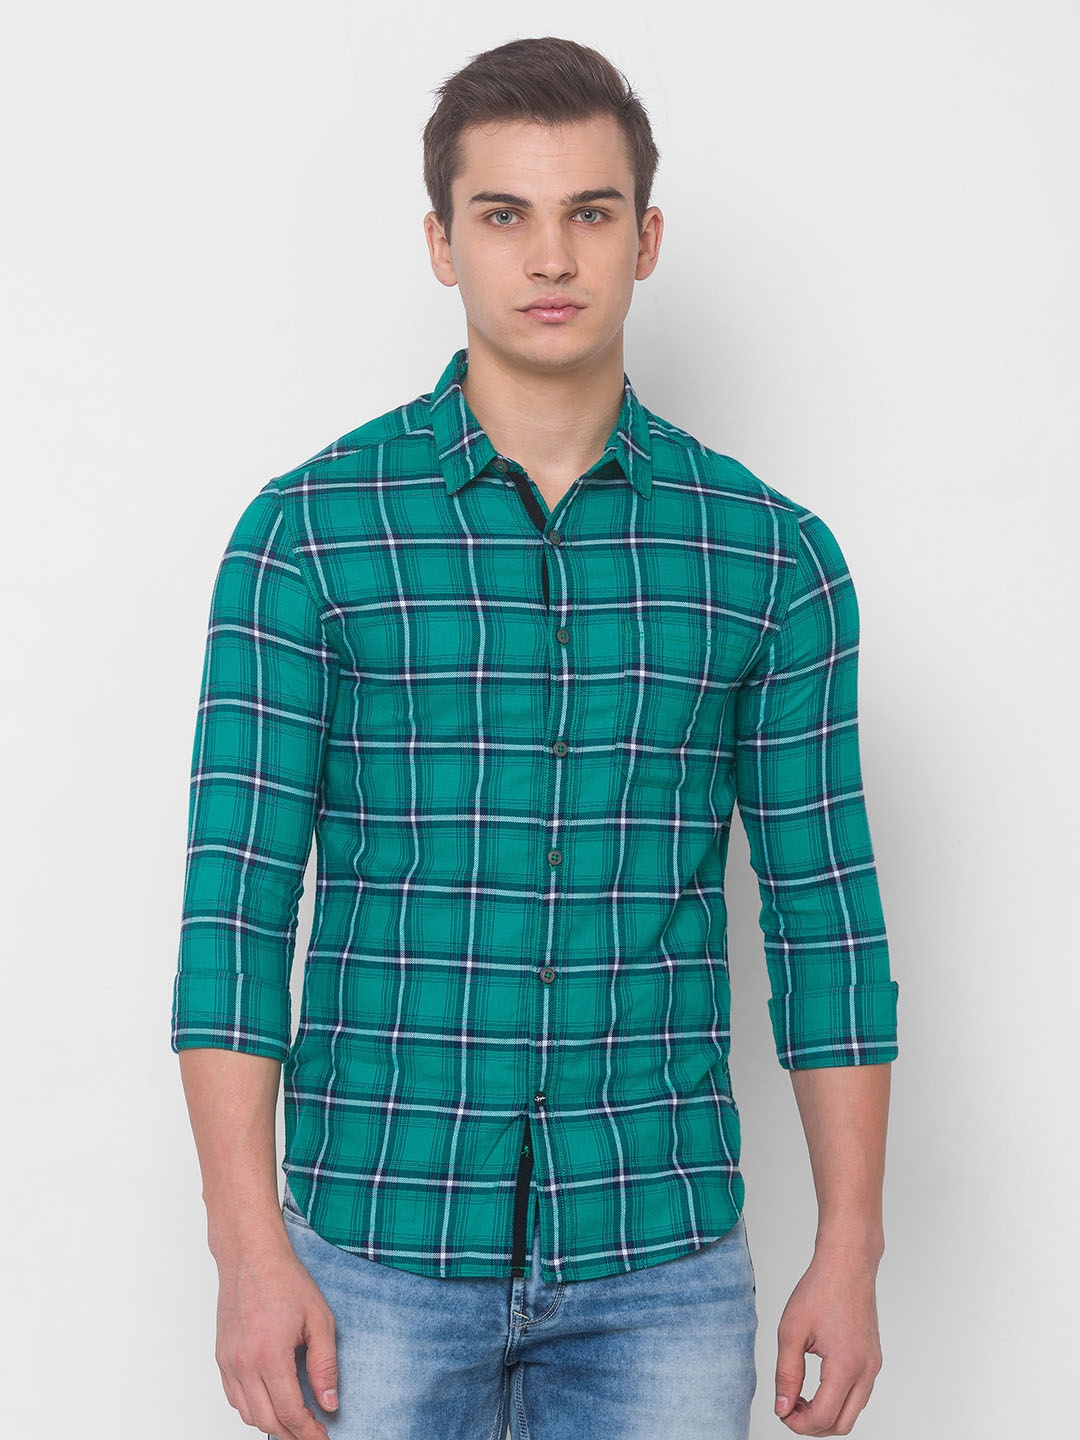 Spykar | Spykar Green Cotton Shirts (Slim)